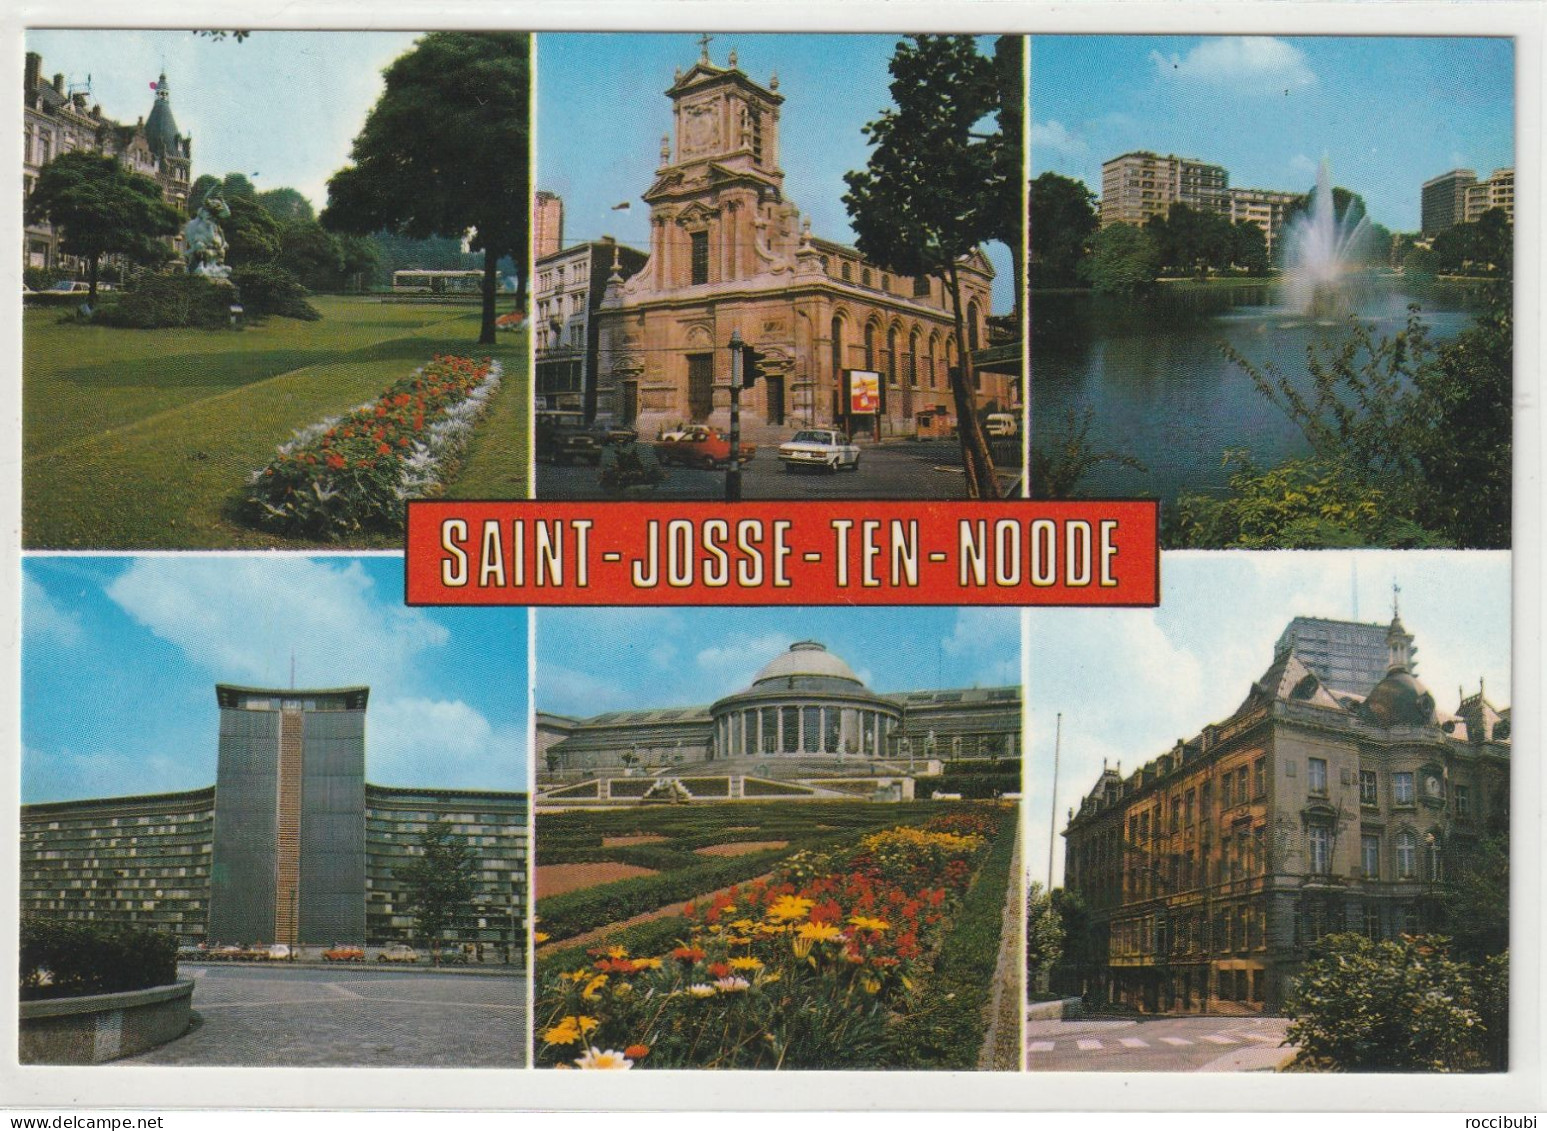 Saint-Josse-ten-Noode - St-Joost-ten-Node - St-Josse-ten-Noode